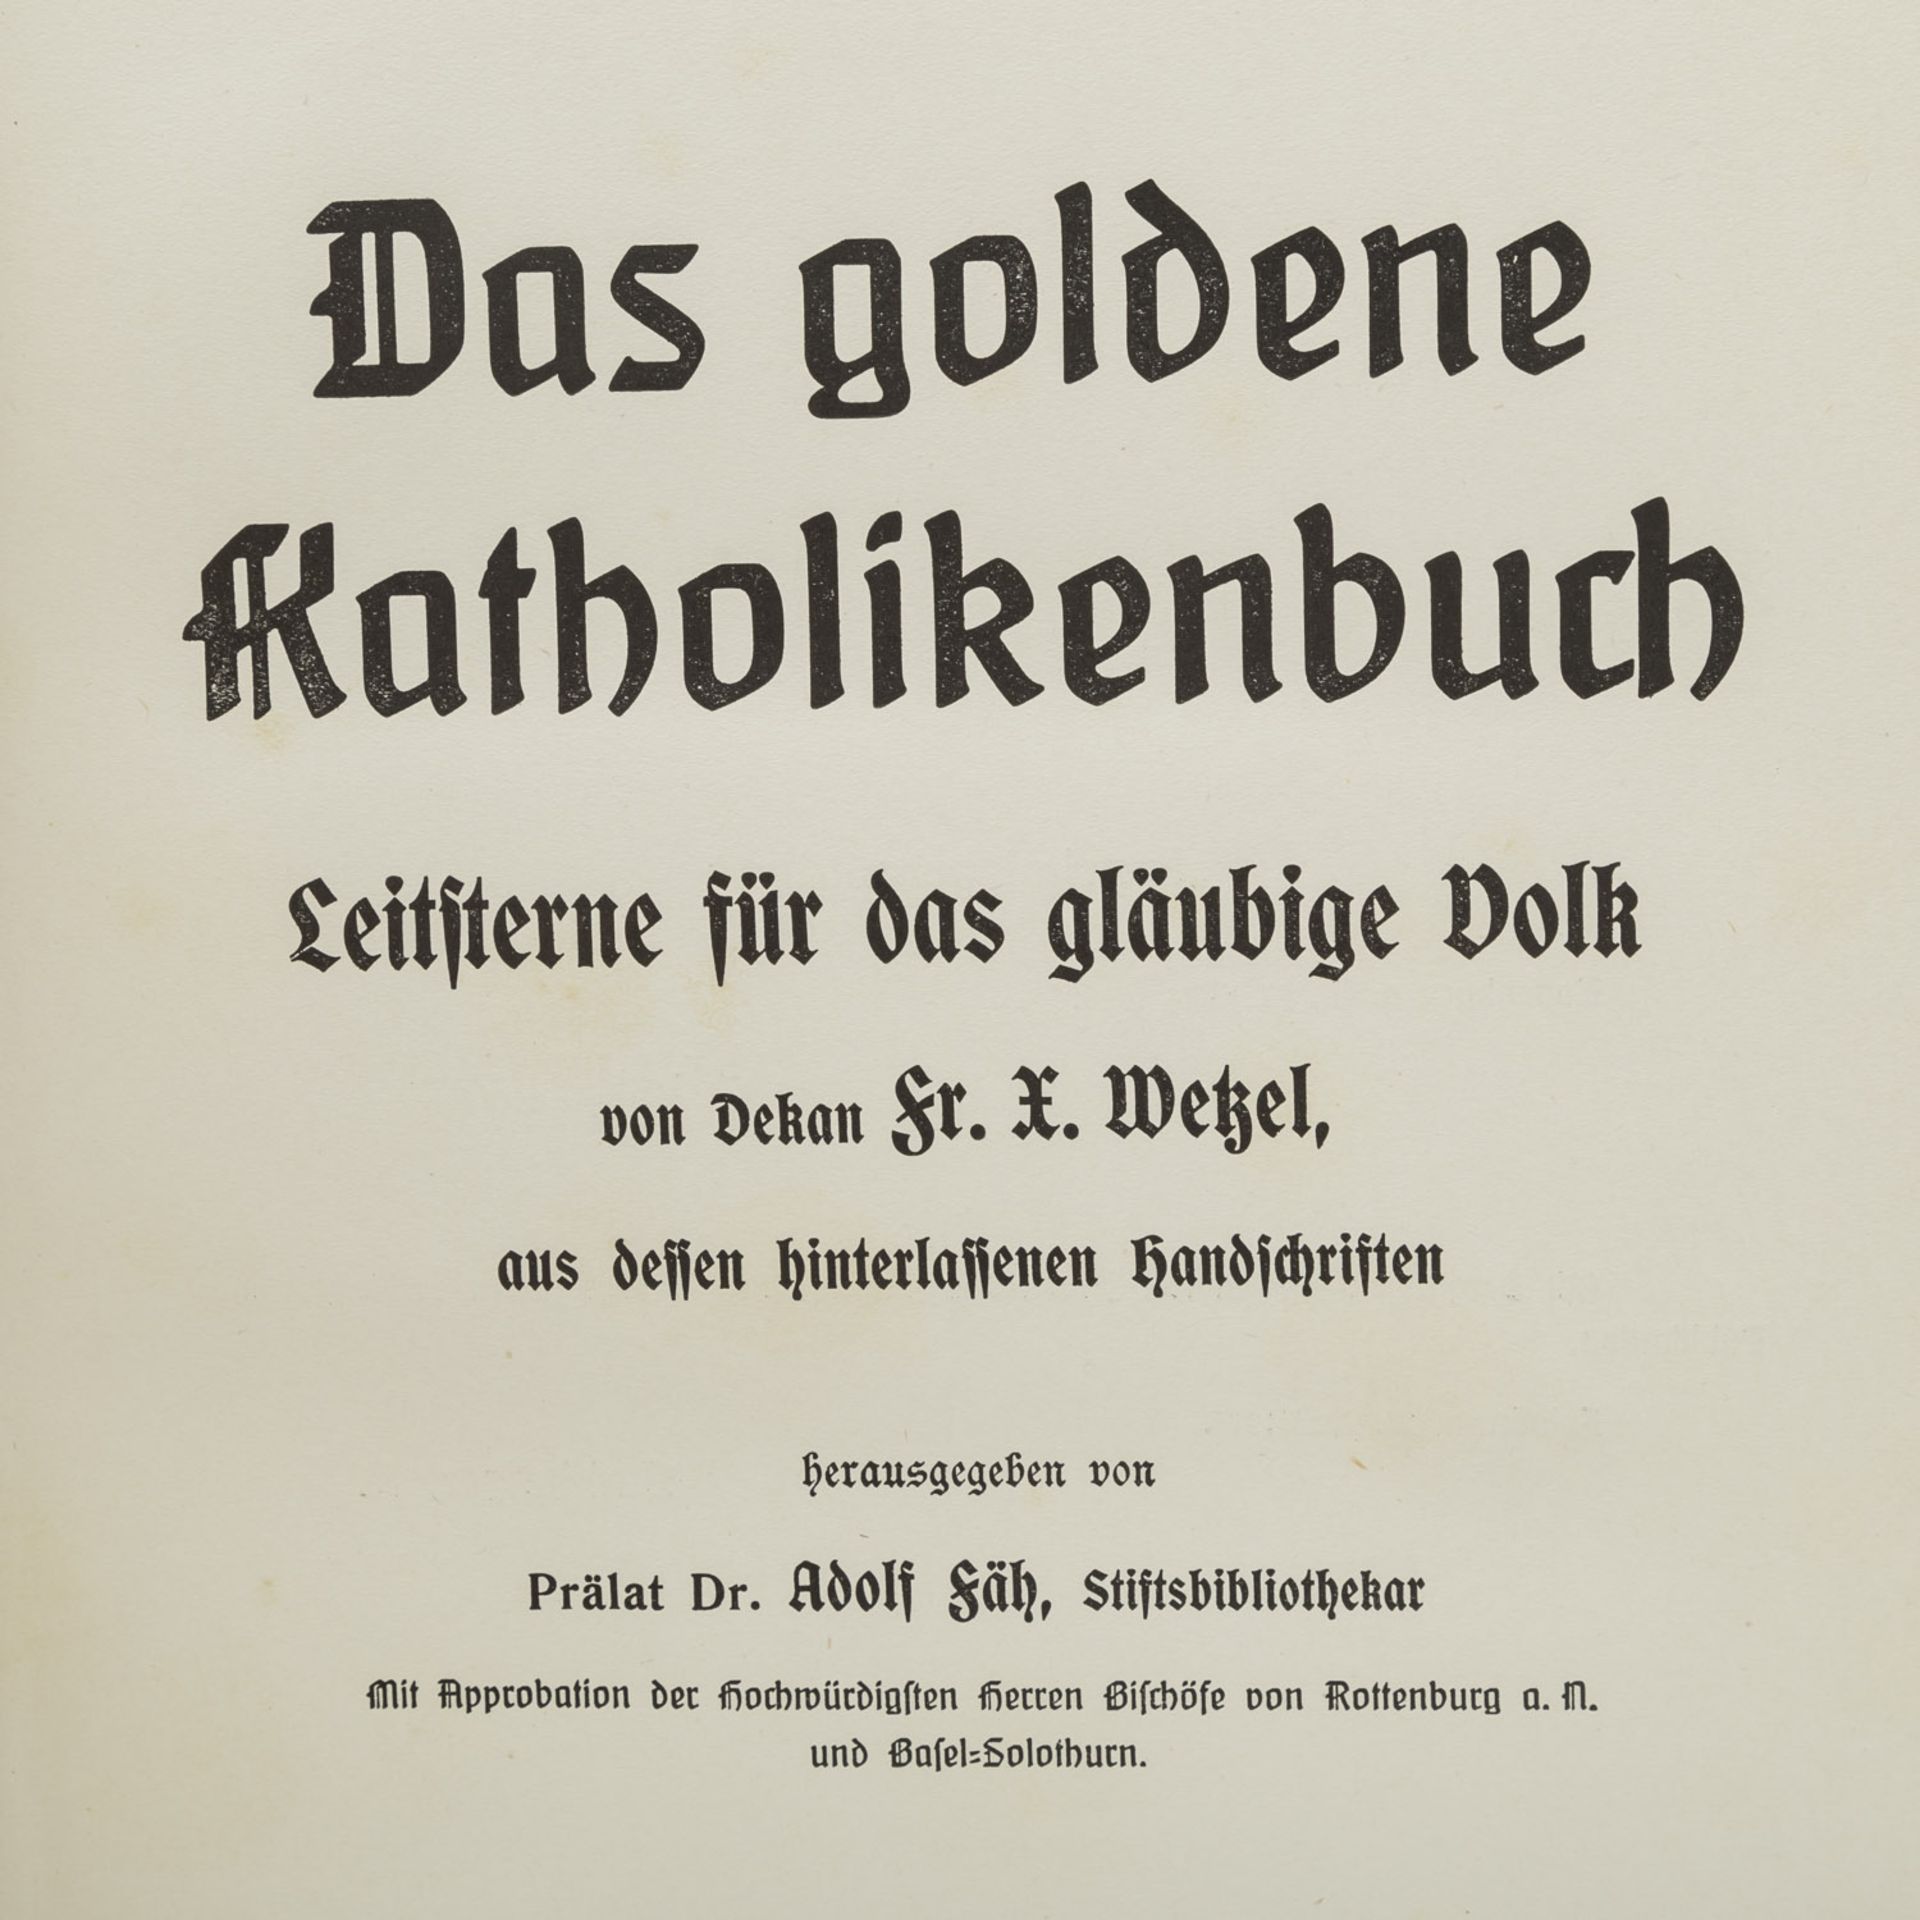 DAS GOLDENE KATHOLIKENBUCHFÜR DAS GLÄUBIGE VOLK von Dekan Fr. X. Wetzel. Wiesbaden 1914. Mit - Bild 2 aus 5